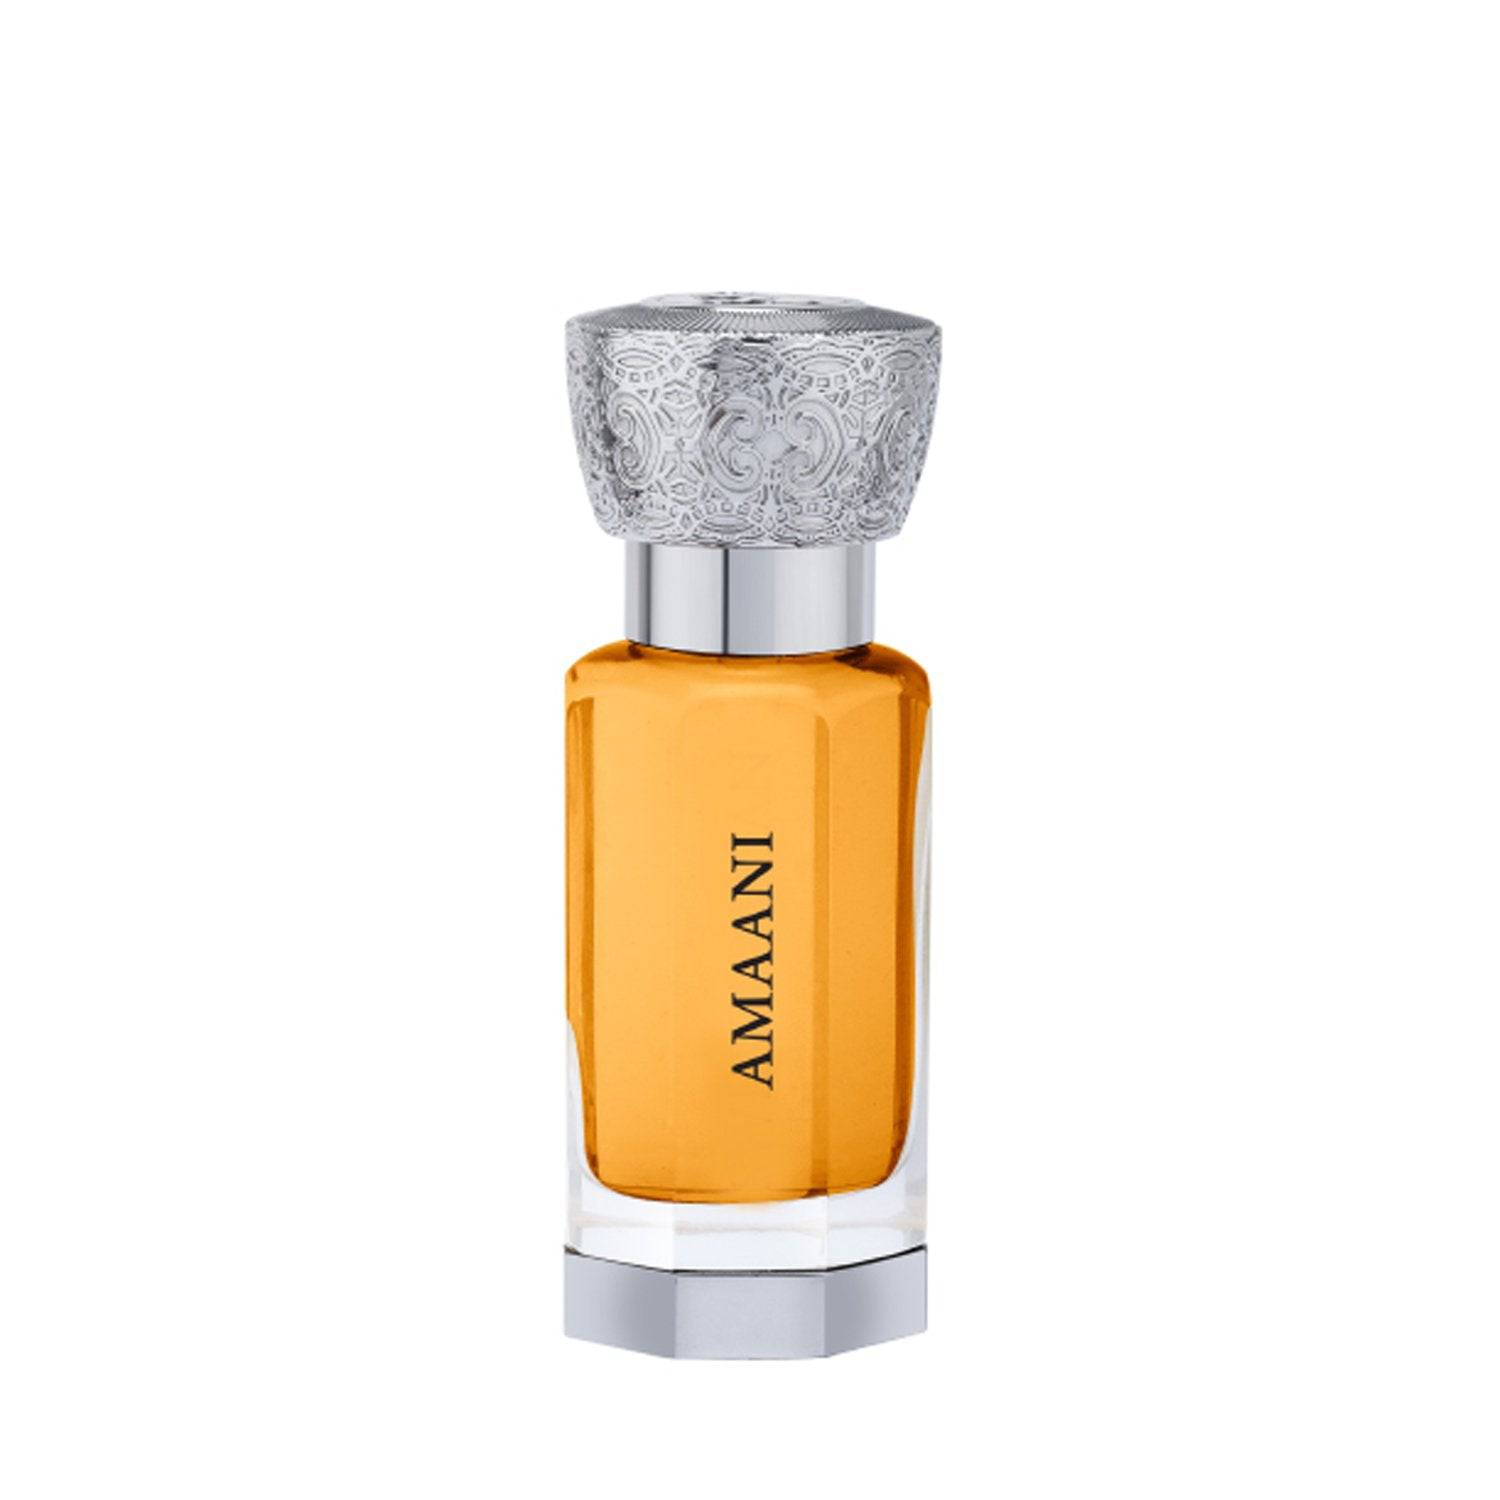 Amaani Perfume Oil - 12ML (0.40 oz) by Swiss Arabian - Intense oud